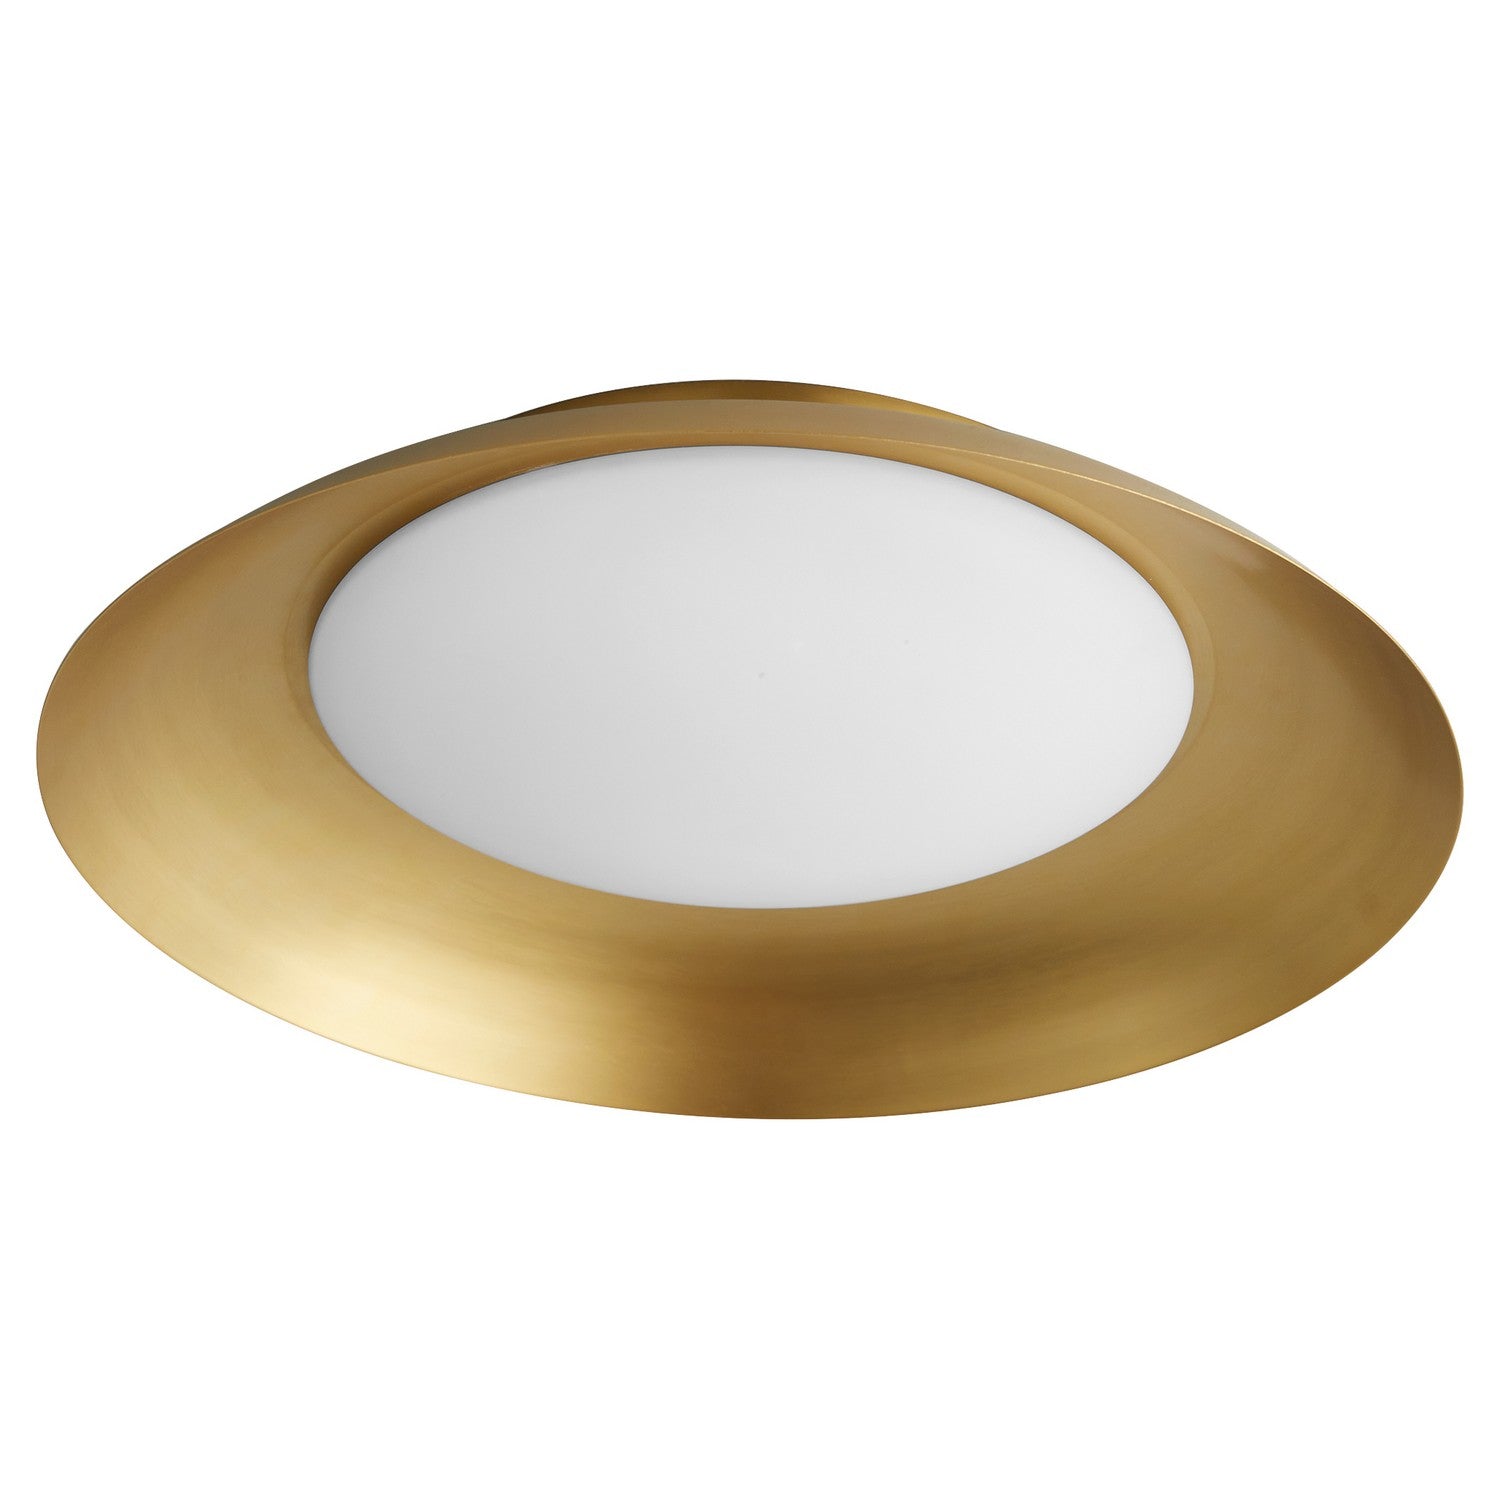 Oxygen Bongo 3-679-40 Gold Flush Ceiling Light Fixture - Aged Brass